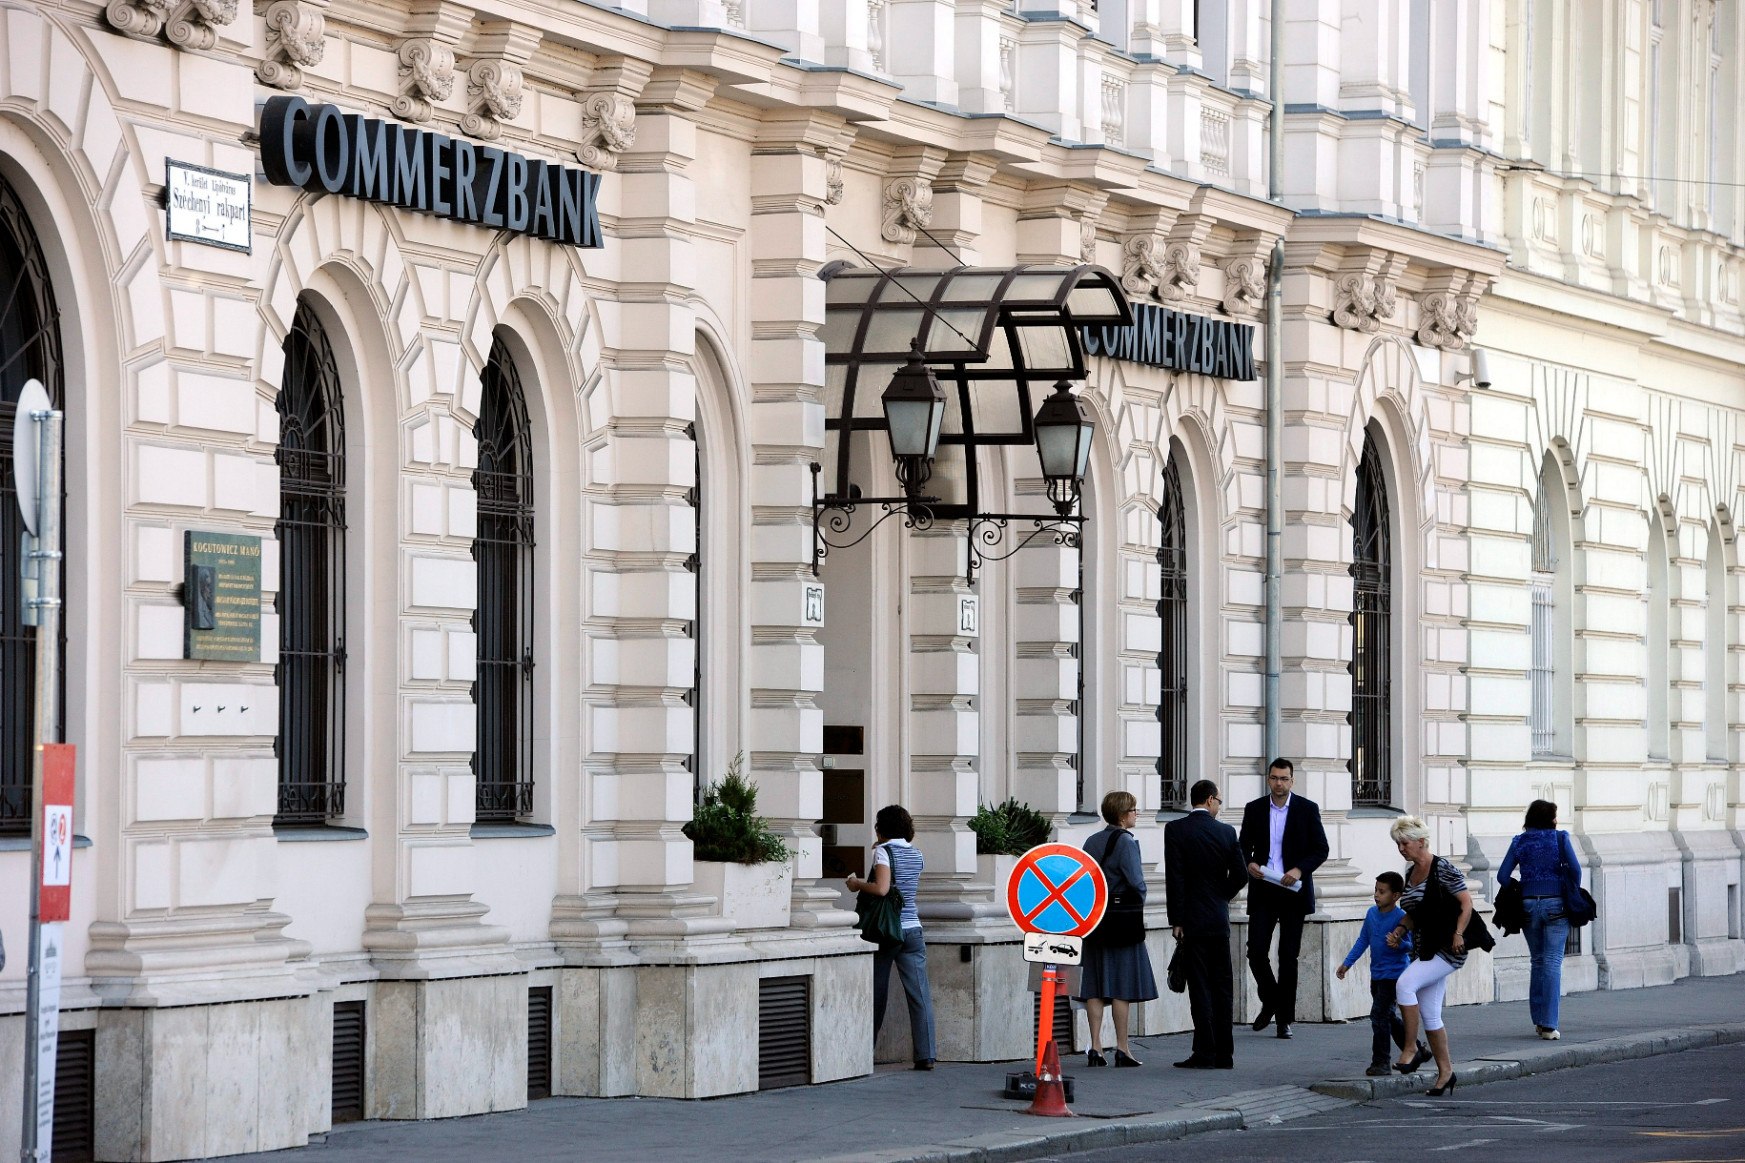 Eladó Magyarországon a Commerzbank: indulhat a tülekedés